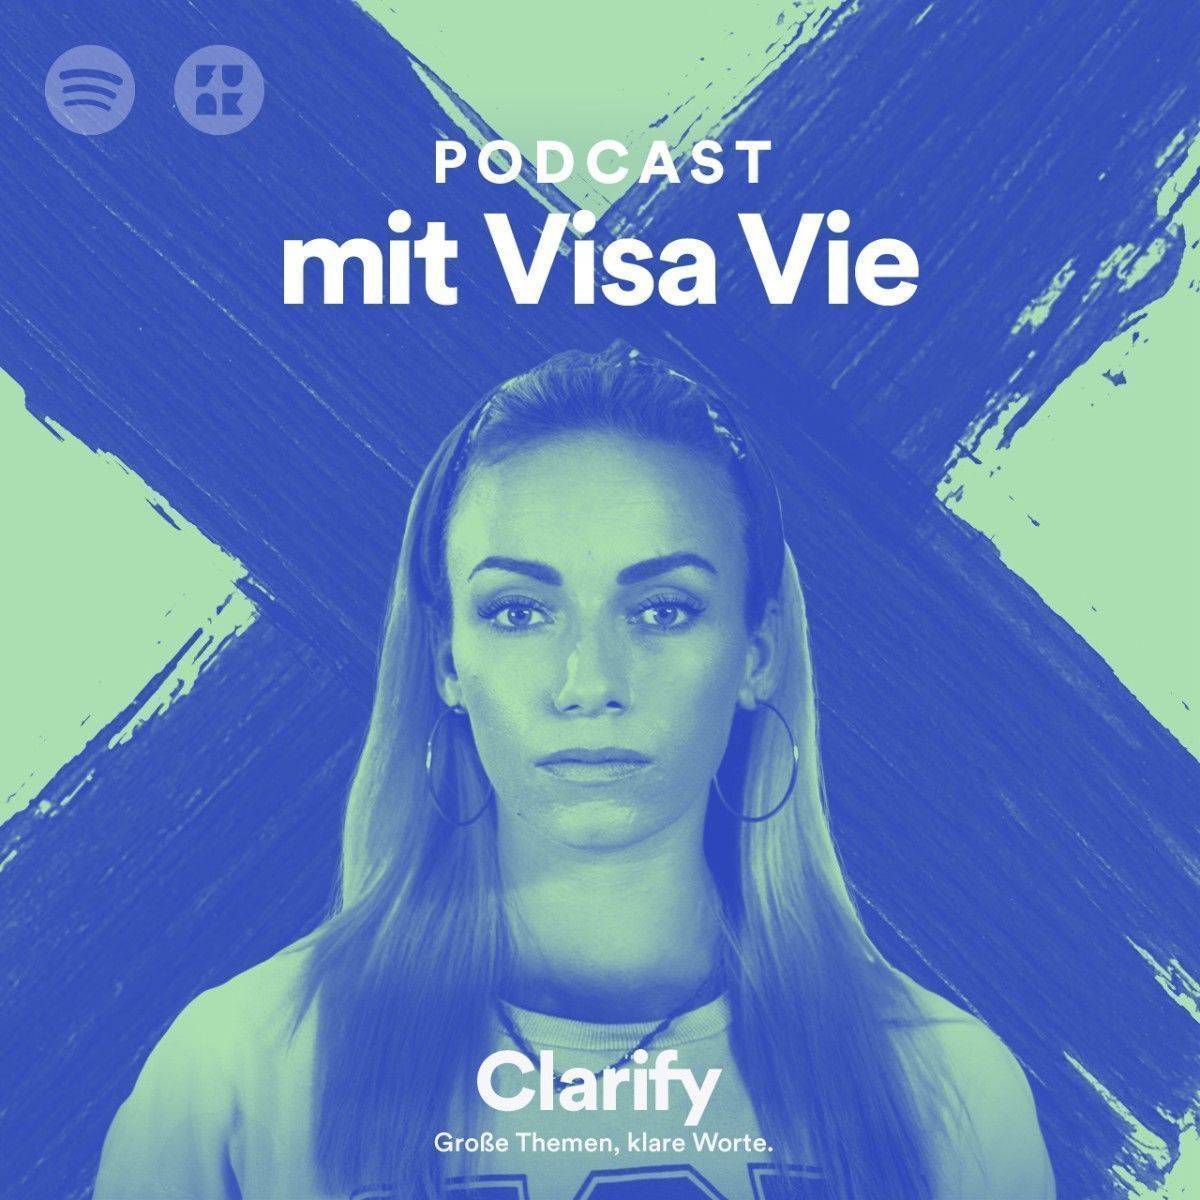 Der neue Podcast Clarify von Spotify und Funk mit Moderatorin Visa Vie.